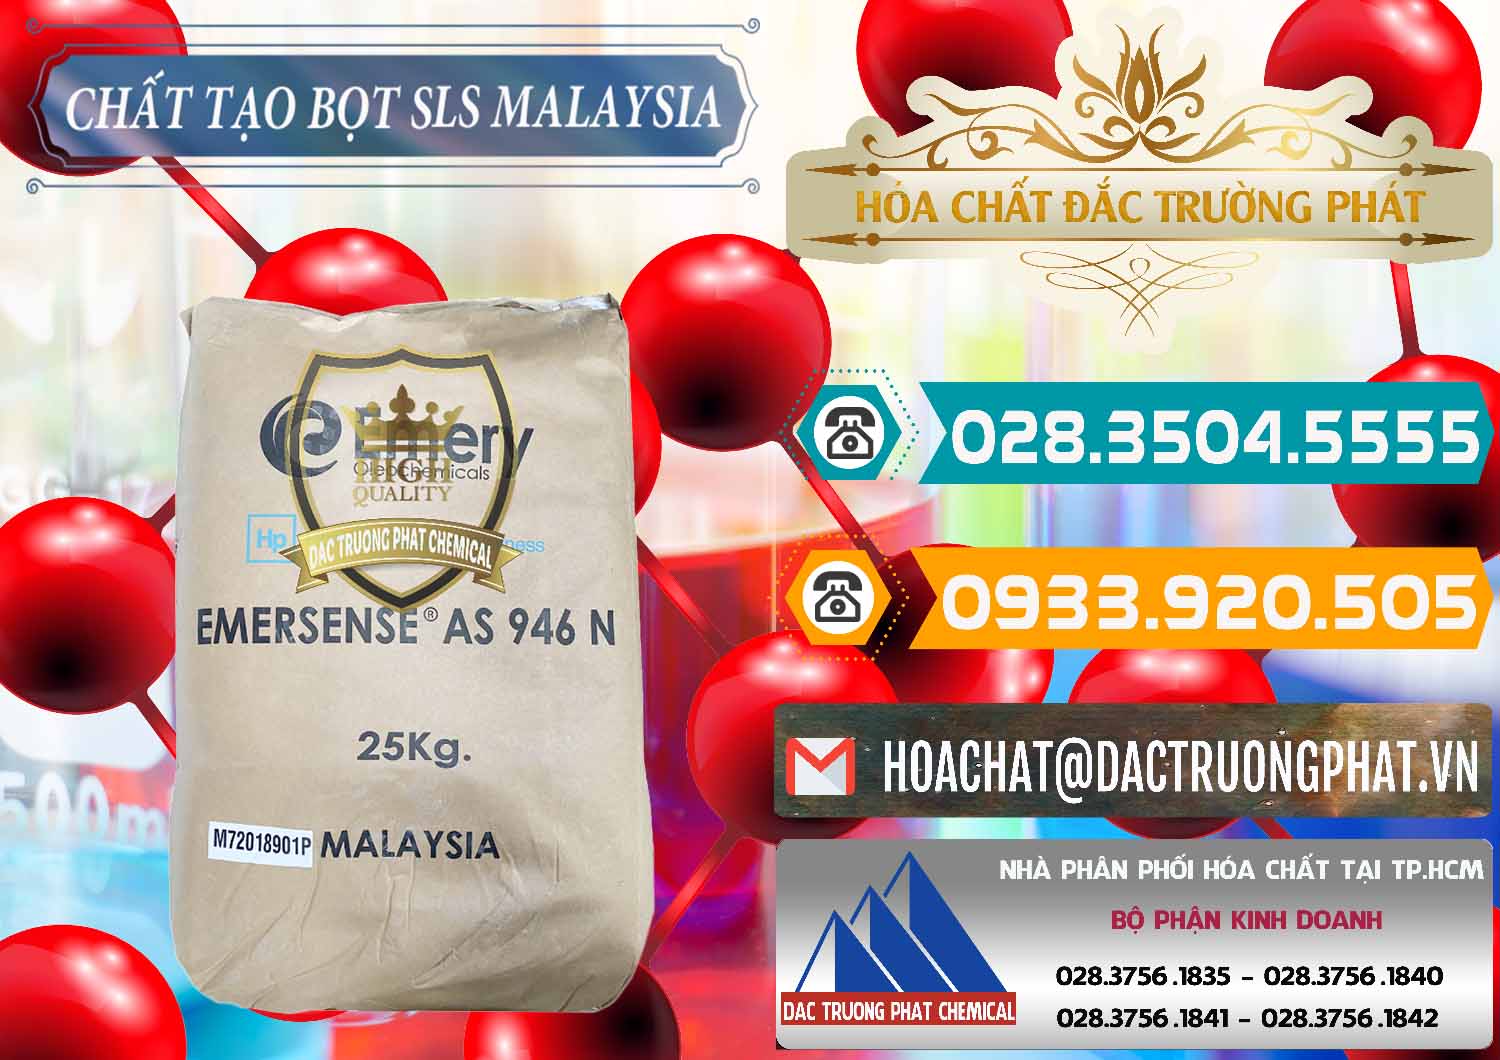 Đơn vị chuyên cung cấp _ bán Chất Tạo Bọt SLS Emery - Emersense AS 946N Mã Lai Malaysia - 0423 - Phân phối và cung cấp hóa chất tại TP.HCM - congtyhoachat.vn